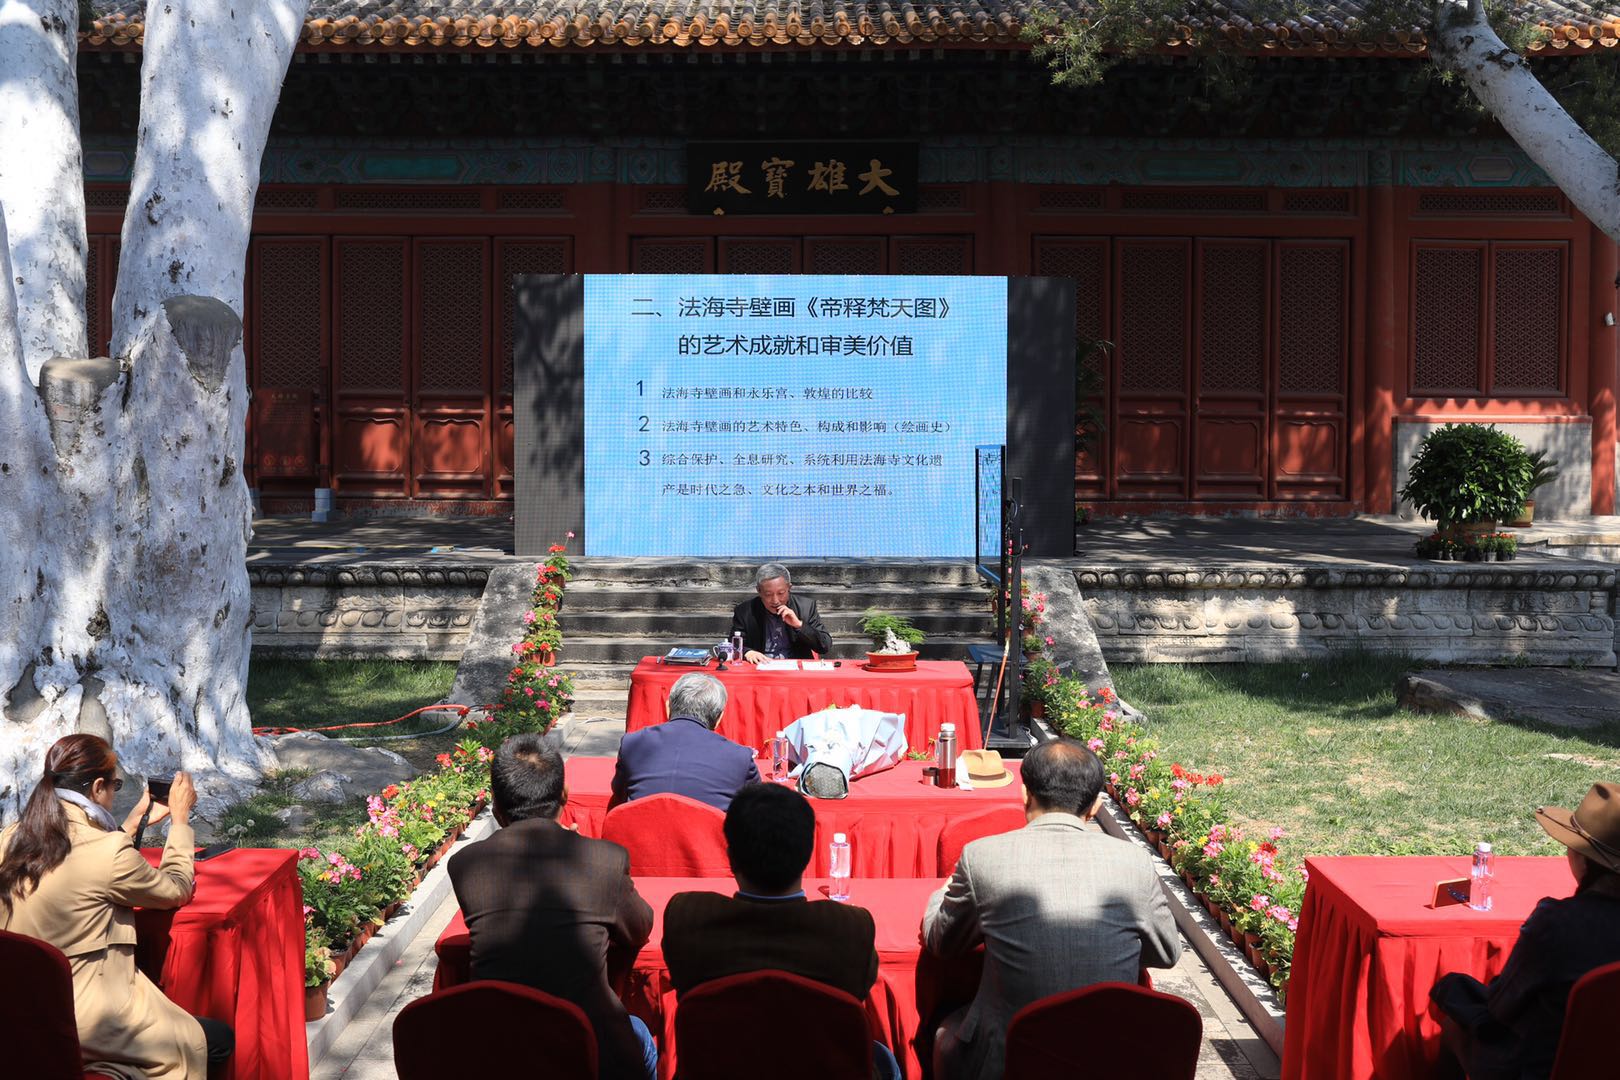 法海寺藏经阁正式开放 立体重现 明代壁画 国内 新京报网